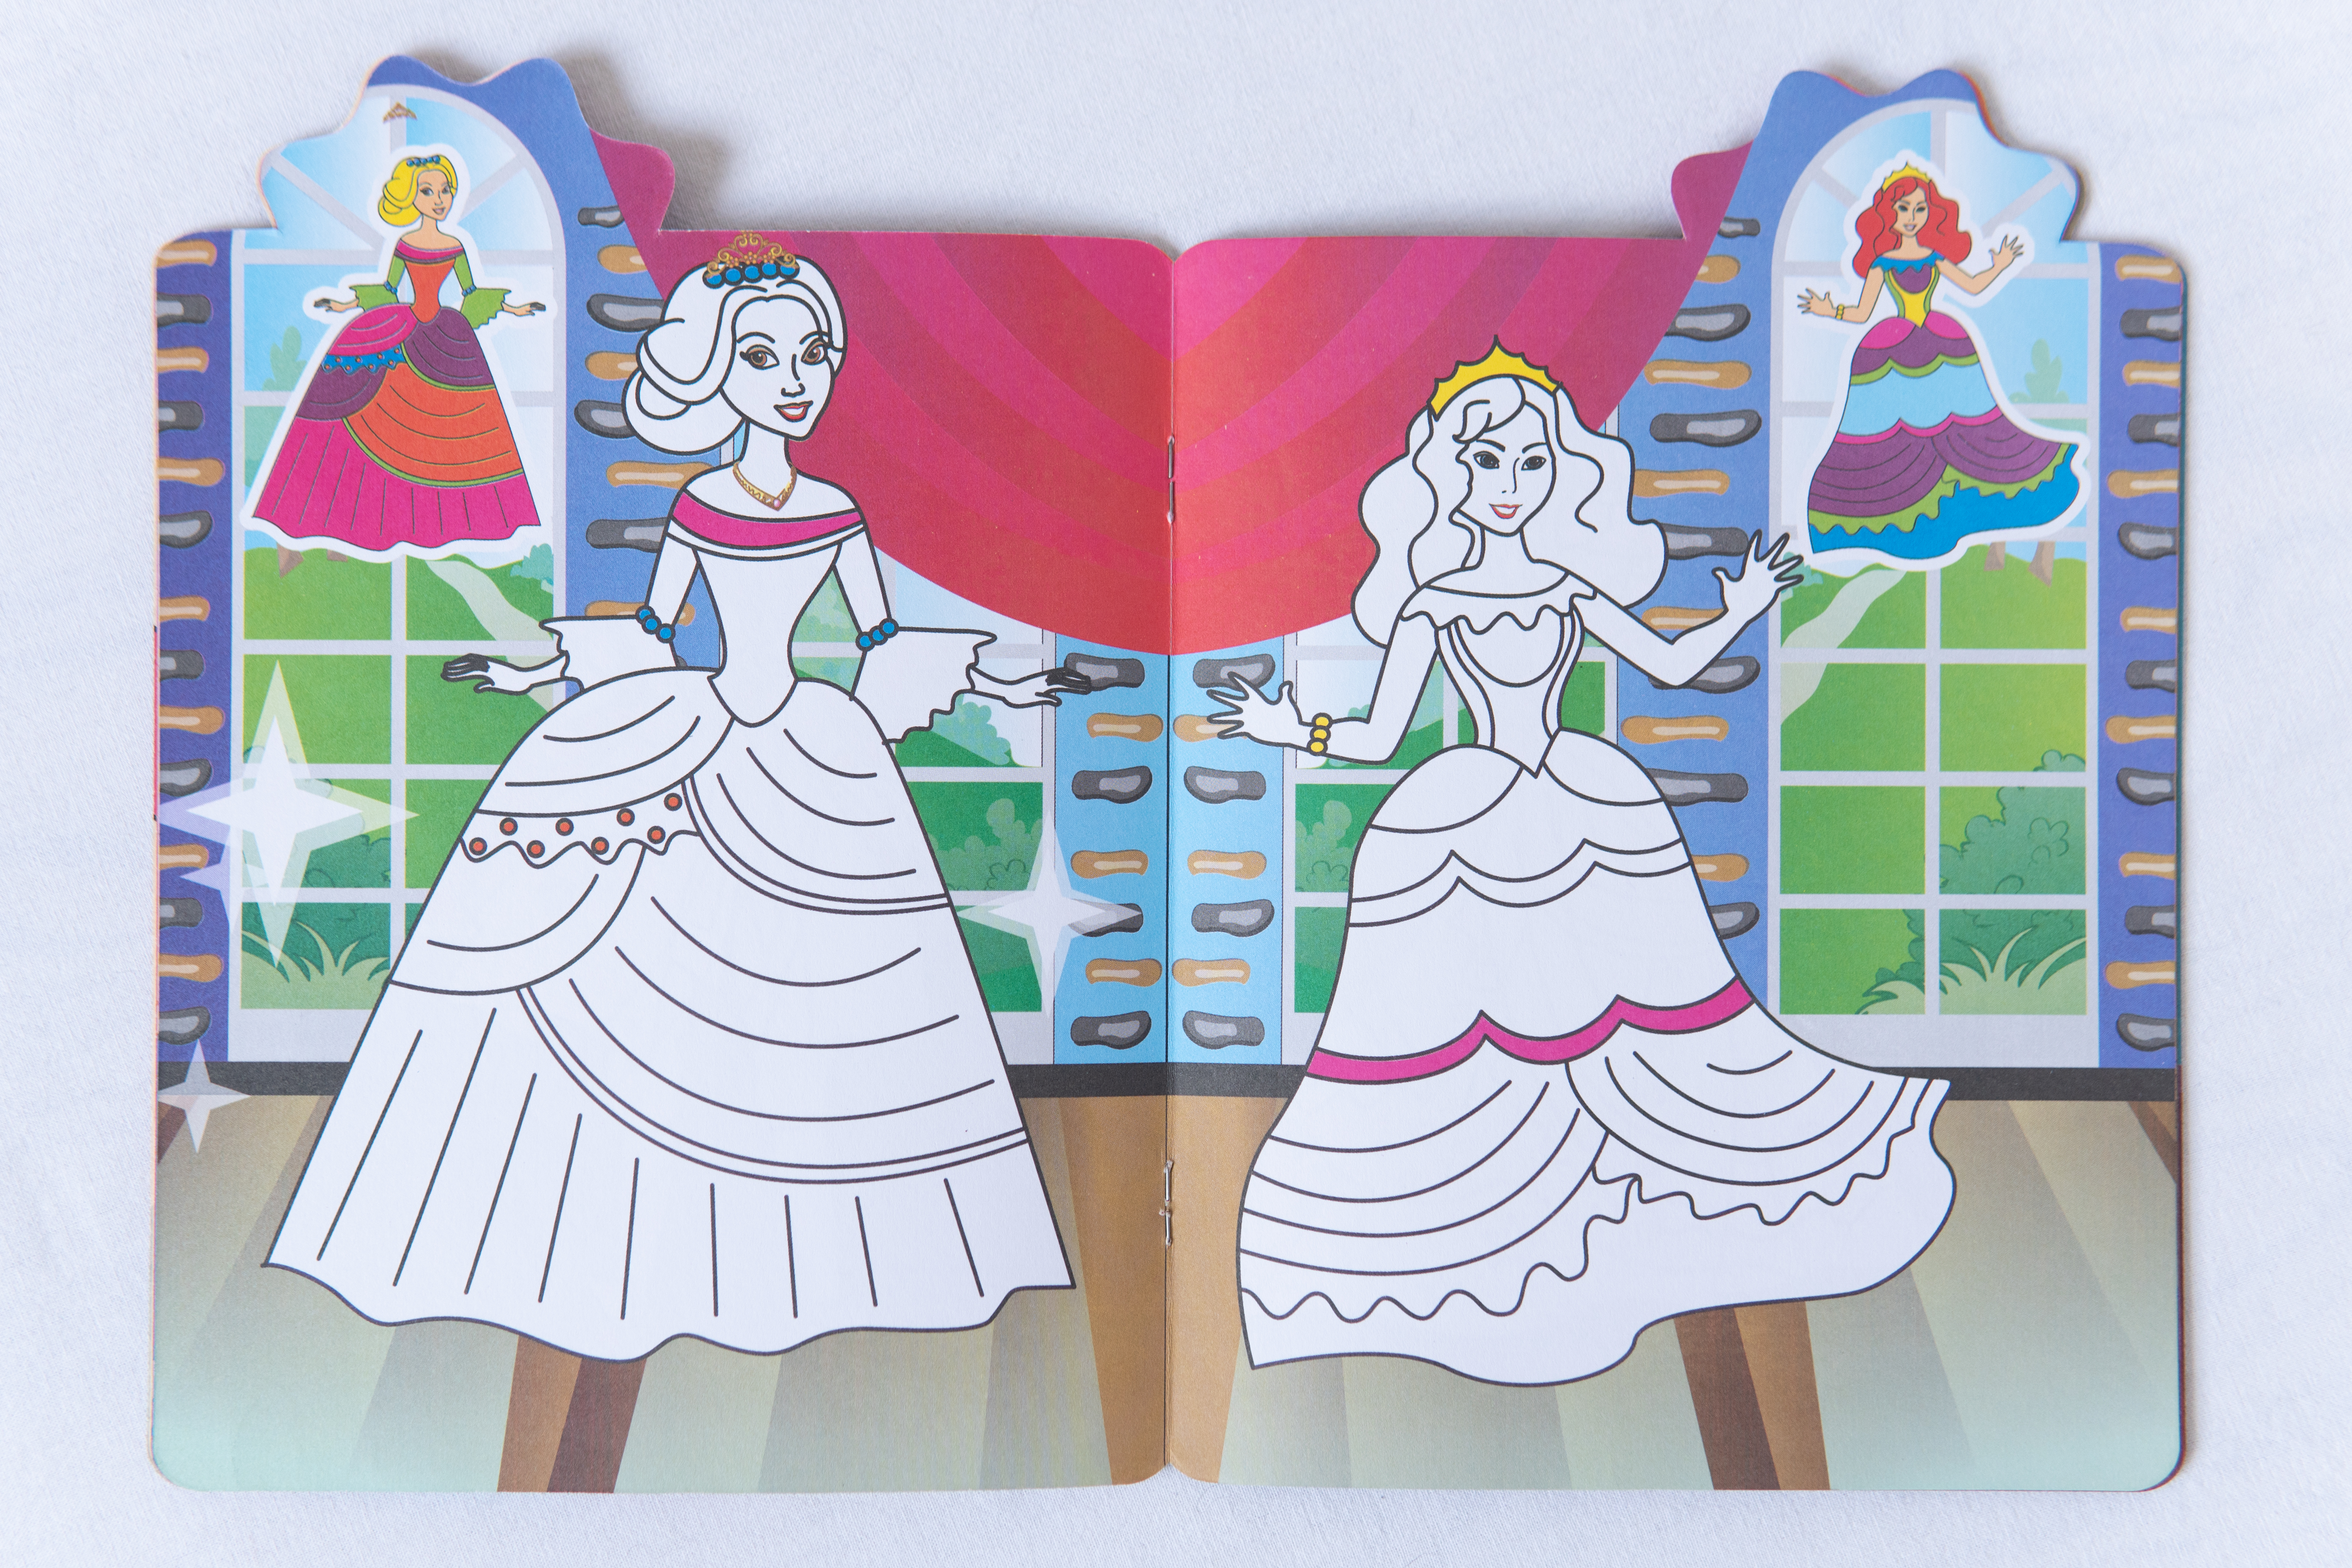 Malbuch für Kleinkinder Mit Hinweisen Prinzessinnen-Karneval ukrainische Ausgabe/Malbuch für Kleinkinder Mit Hinweisen Prinzessinnen-Karneval ukrainische Ausgabe